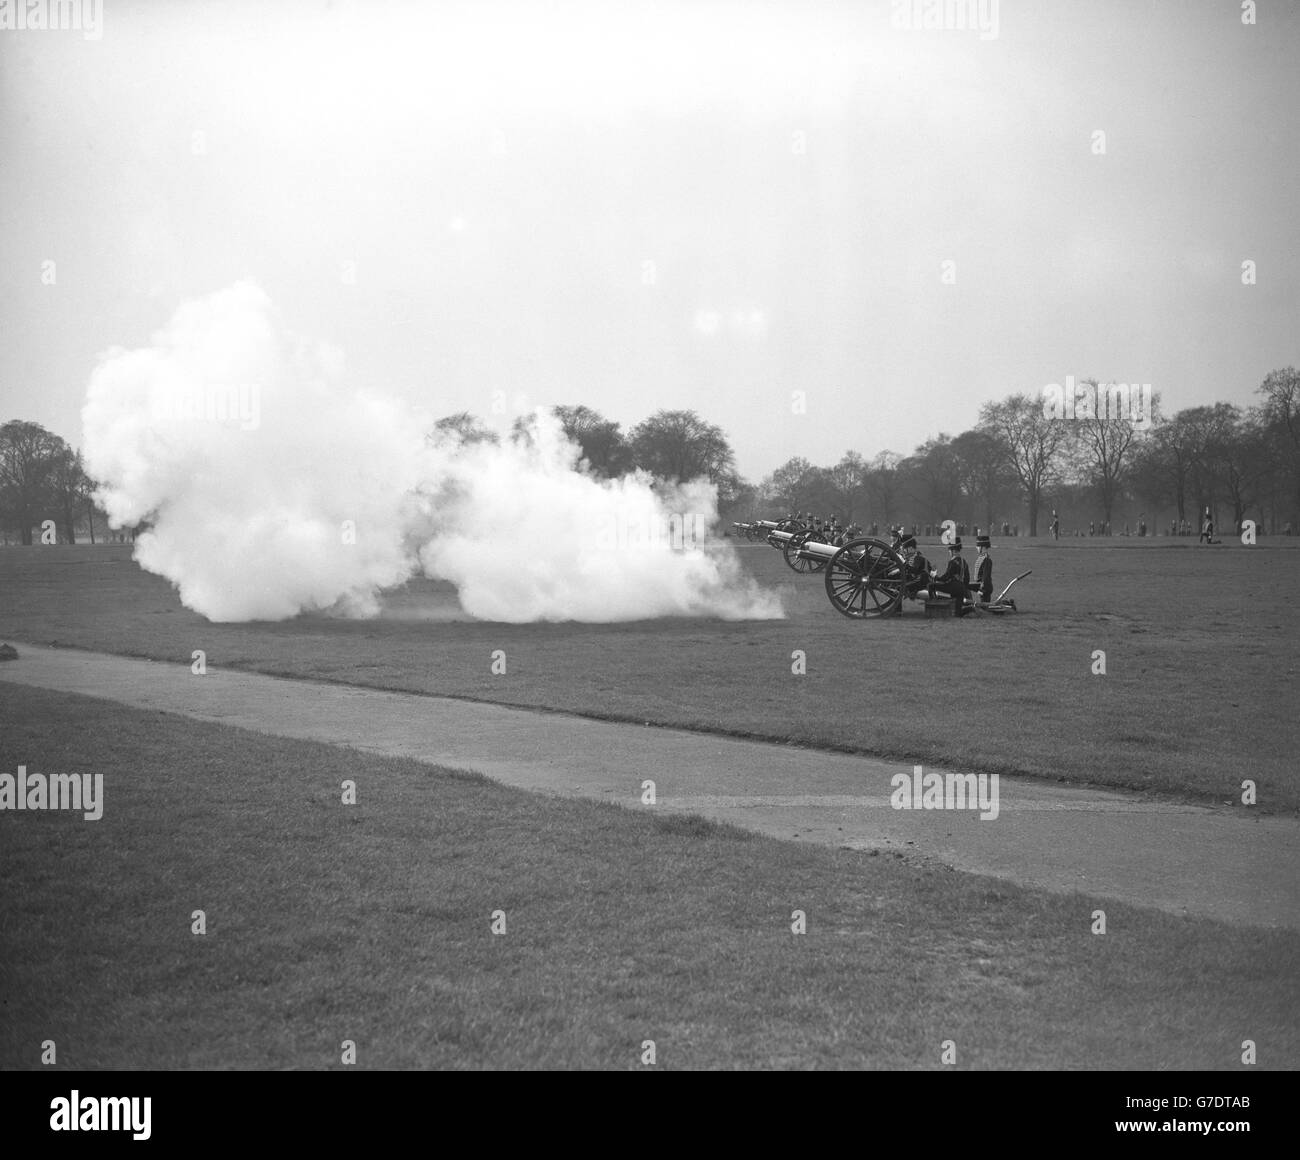 La troupe du roi Royal Horse Artillery tirant des armes de 40 minutes en hommage à la reine Mary à Hyde Park, Londres. Le salut a commencé à midi, tandis que des salutes semblables ont été tirés à d'autres stations de salinisation au pays et à l'étranger. Banque D'Images